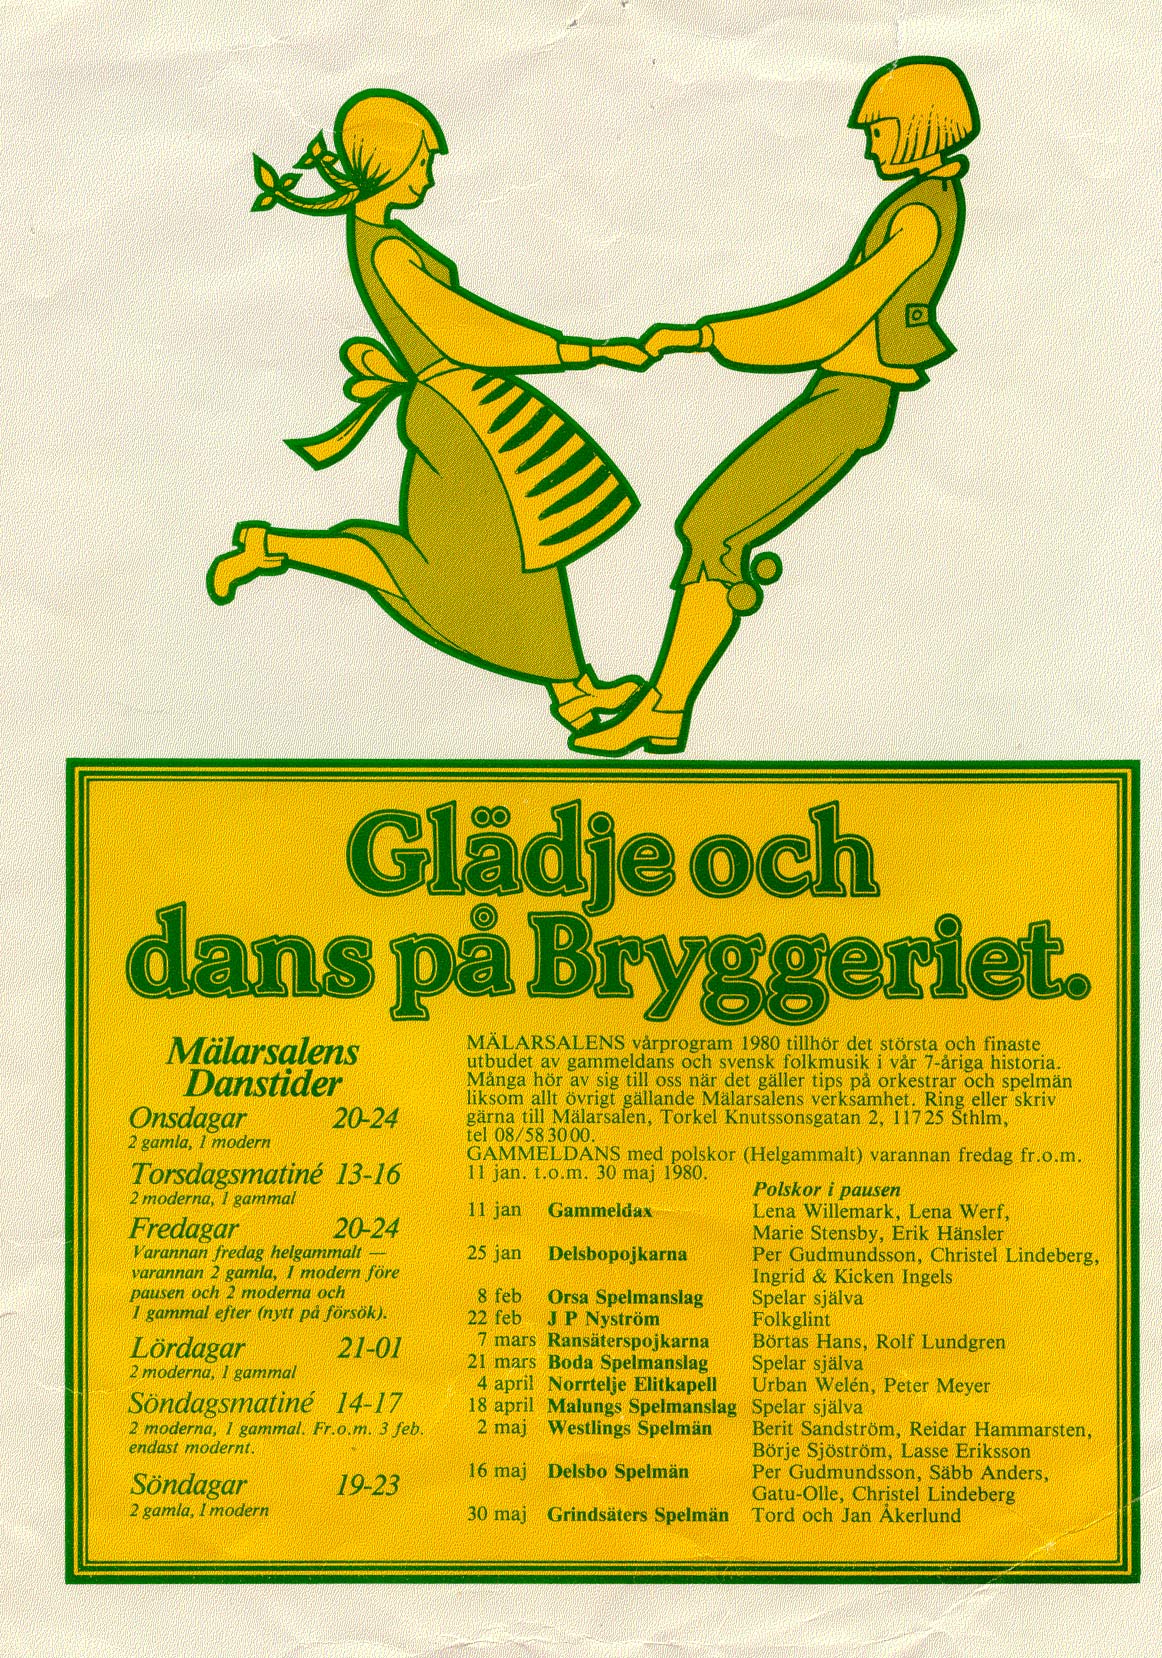 Mälarsalens dansprogram 1980